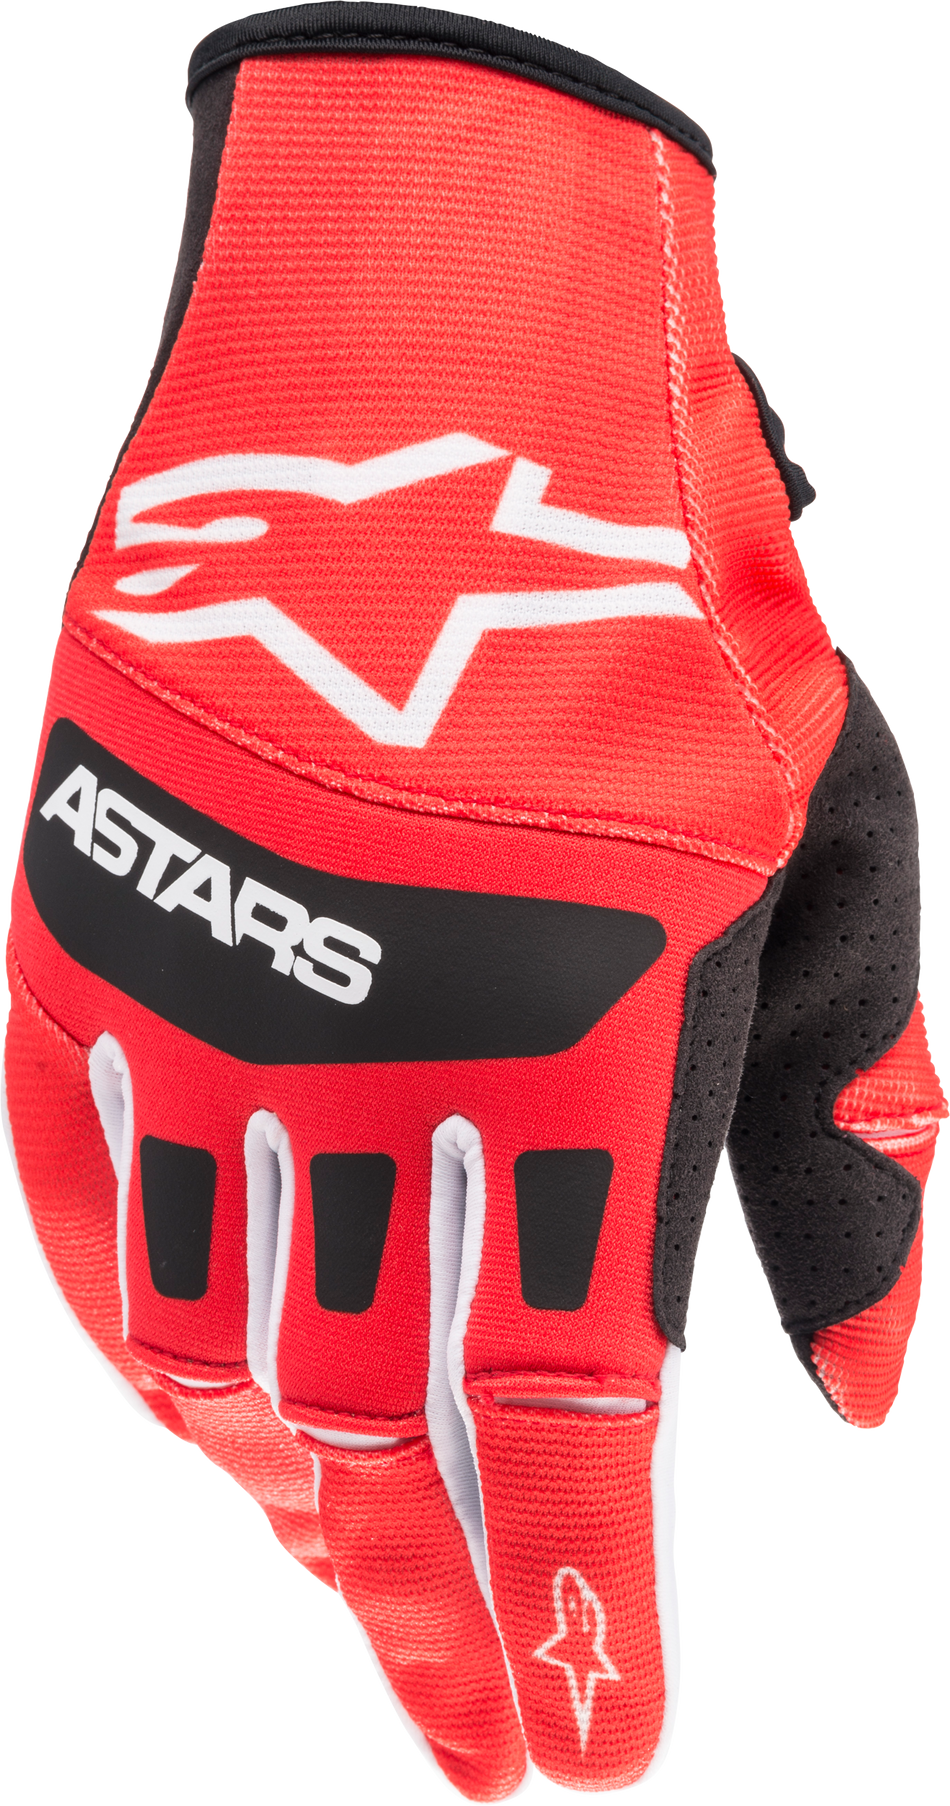 ALPINESTARS Techstar Gloves Bright Red/Black Sm 3561022-3031-S